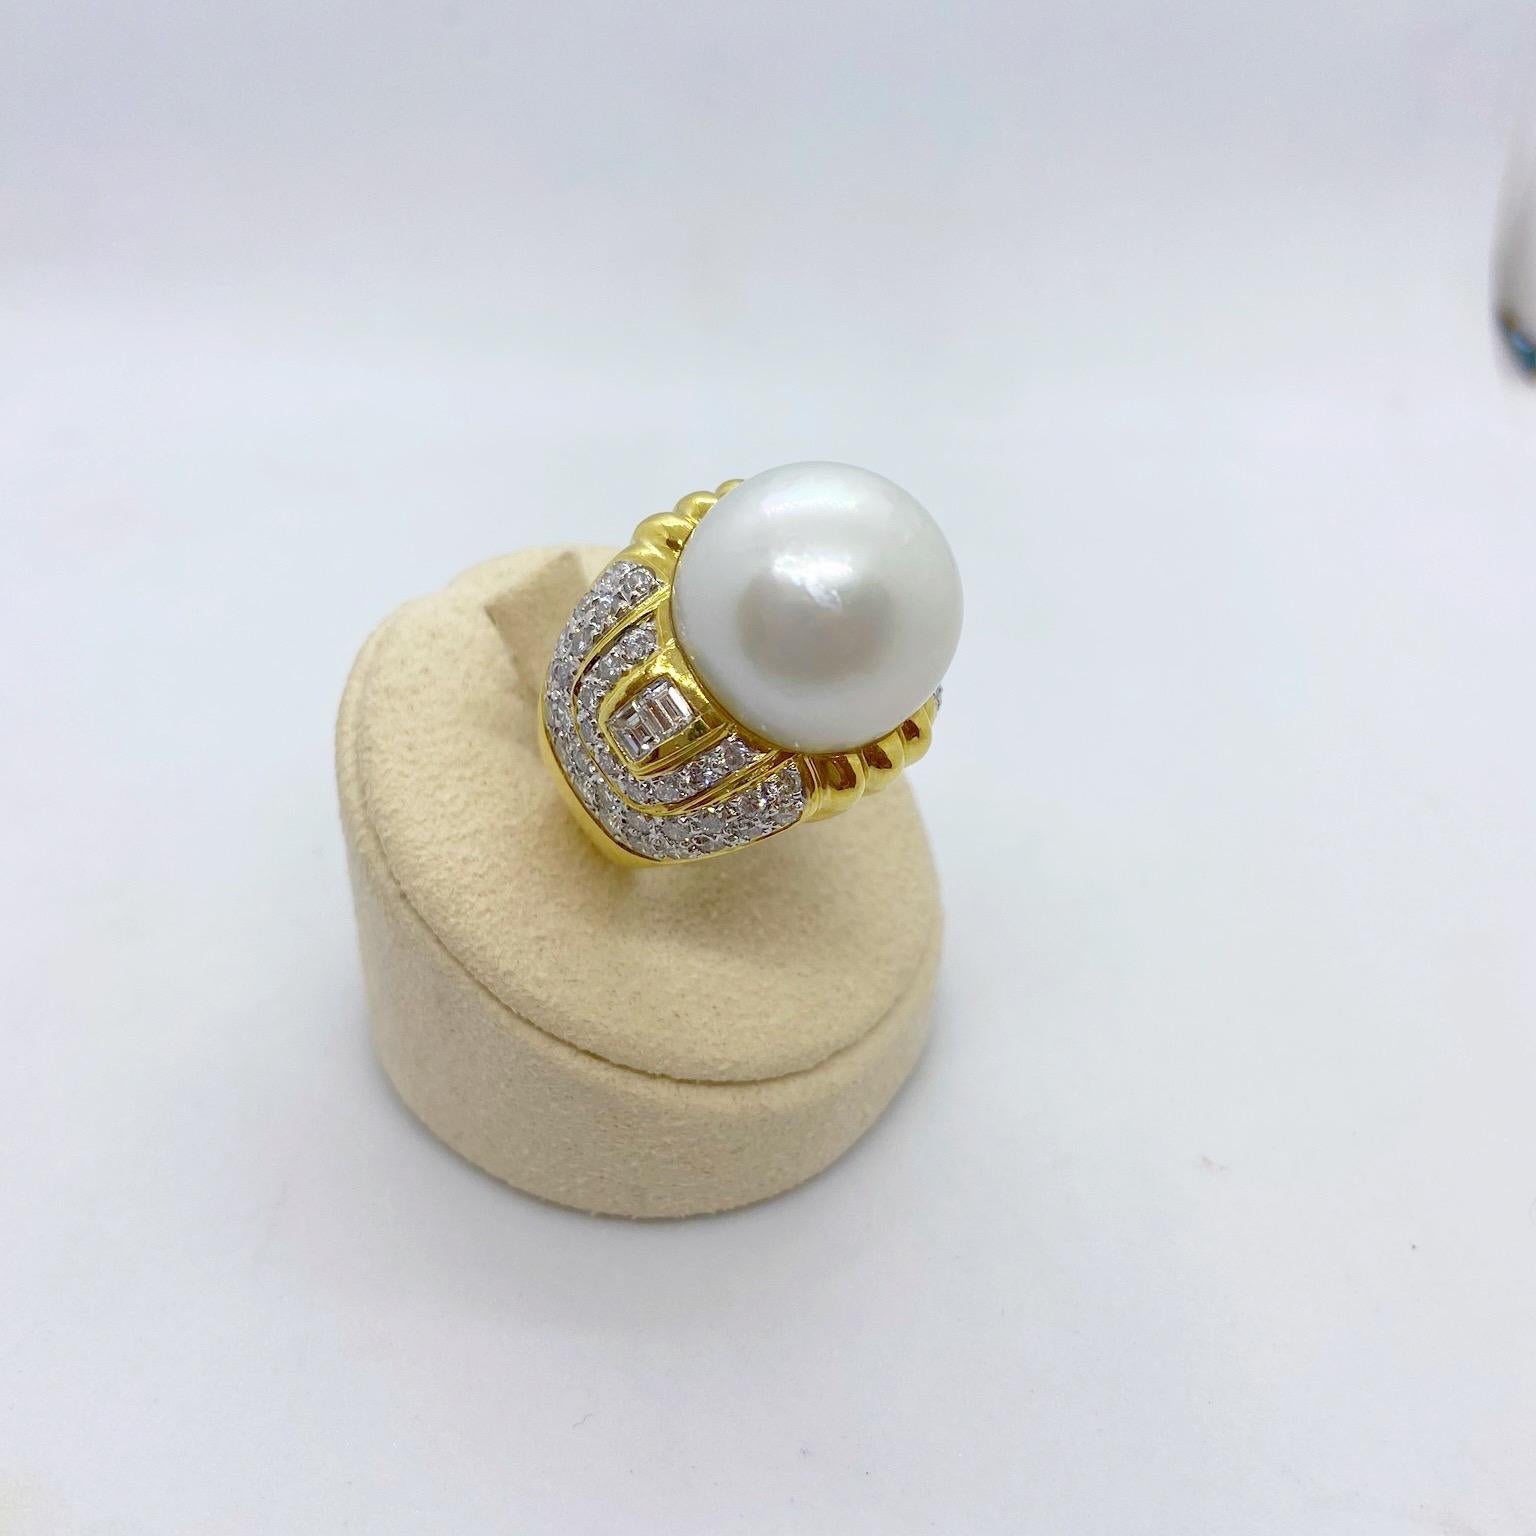 Entworfen von Cellini Jewelers NYC, dieser 18 Karat Gelbgold Deco inspirierten Ring verfügt über eine atemberaubende 16,5MM Südseeperle Zentrum. Die Perle wird von Diamanten im Smaragdschliff flankiert und ist vollständig von runden Brillanten